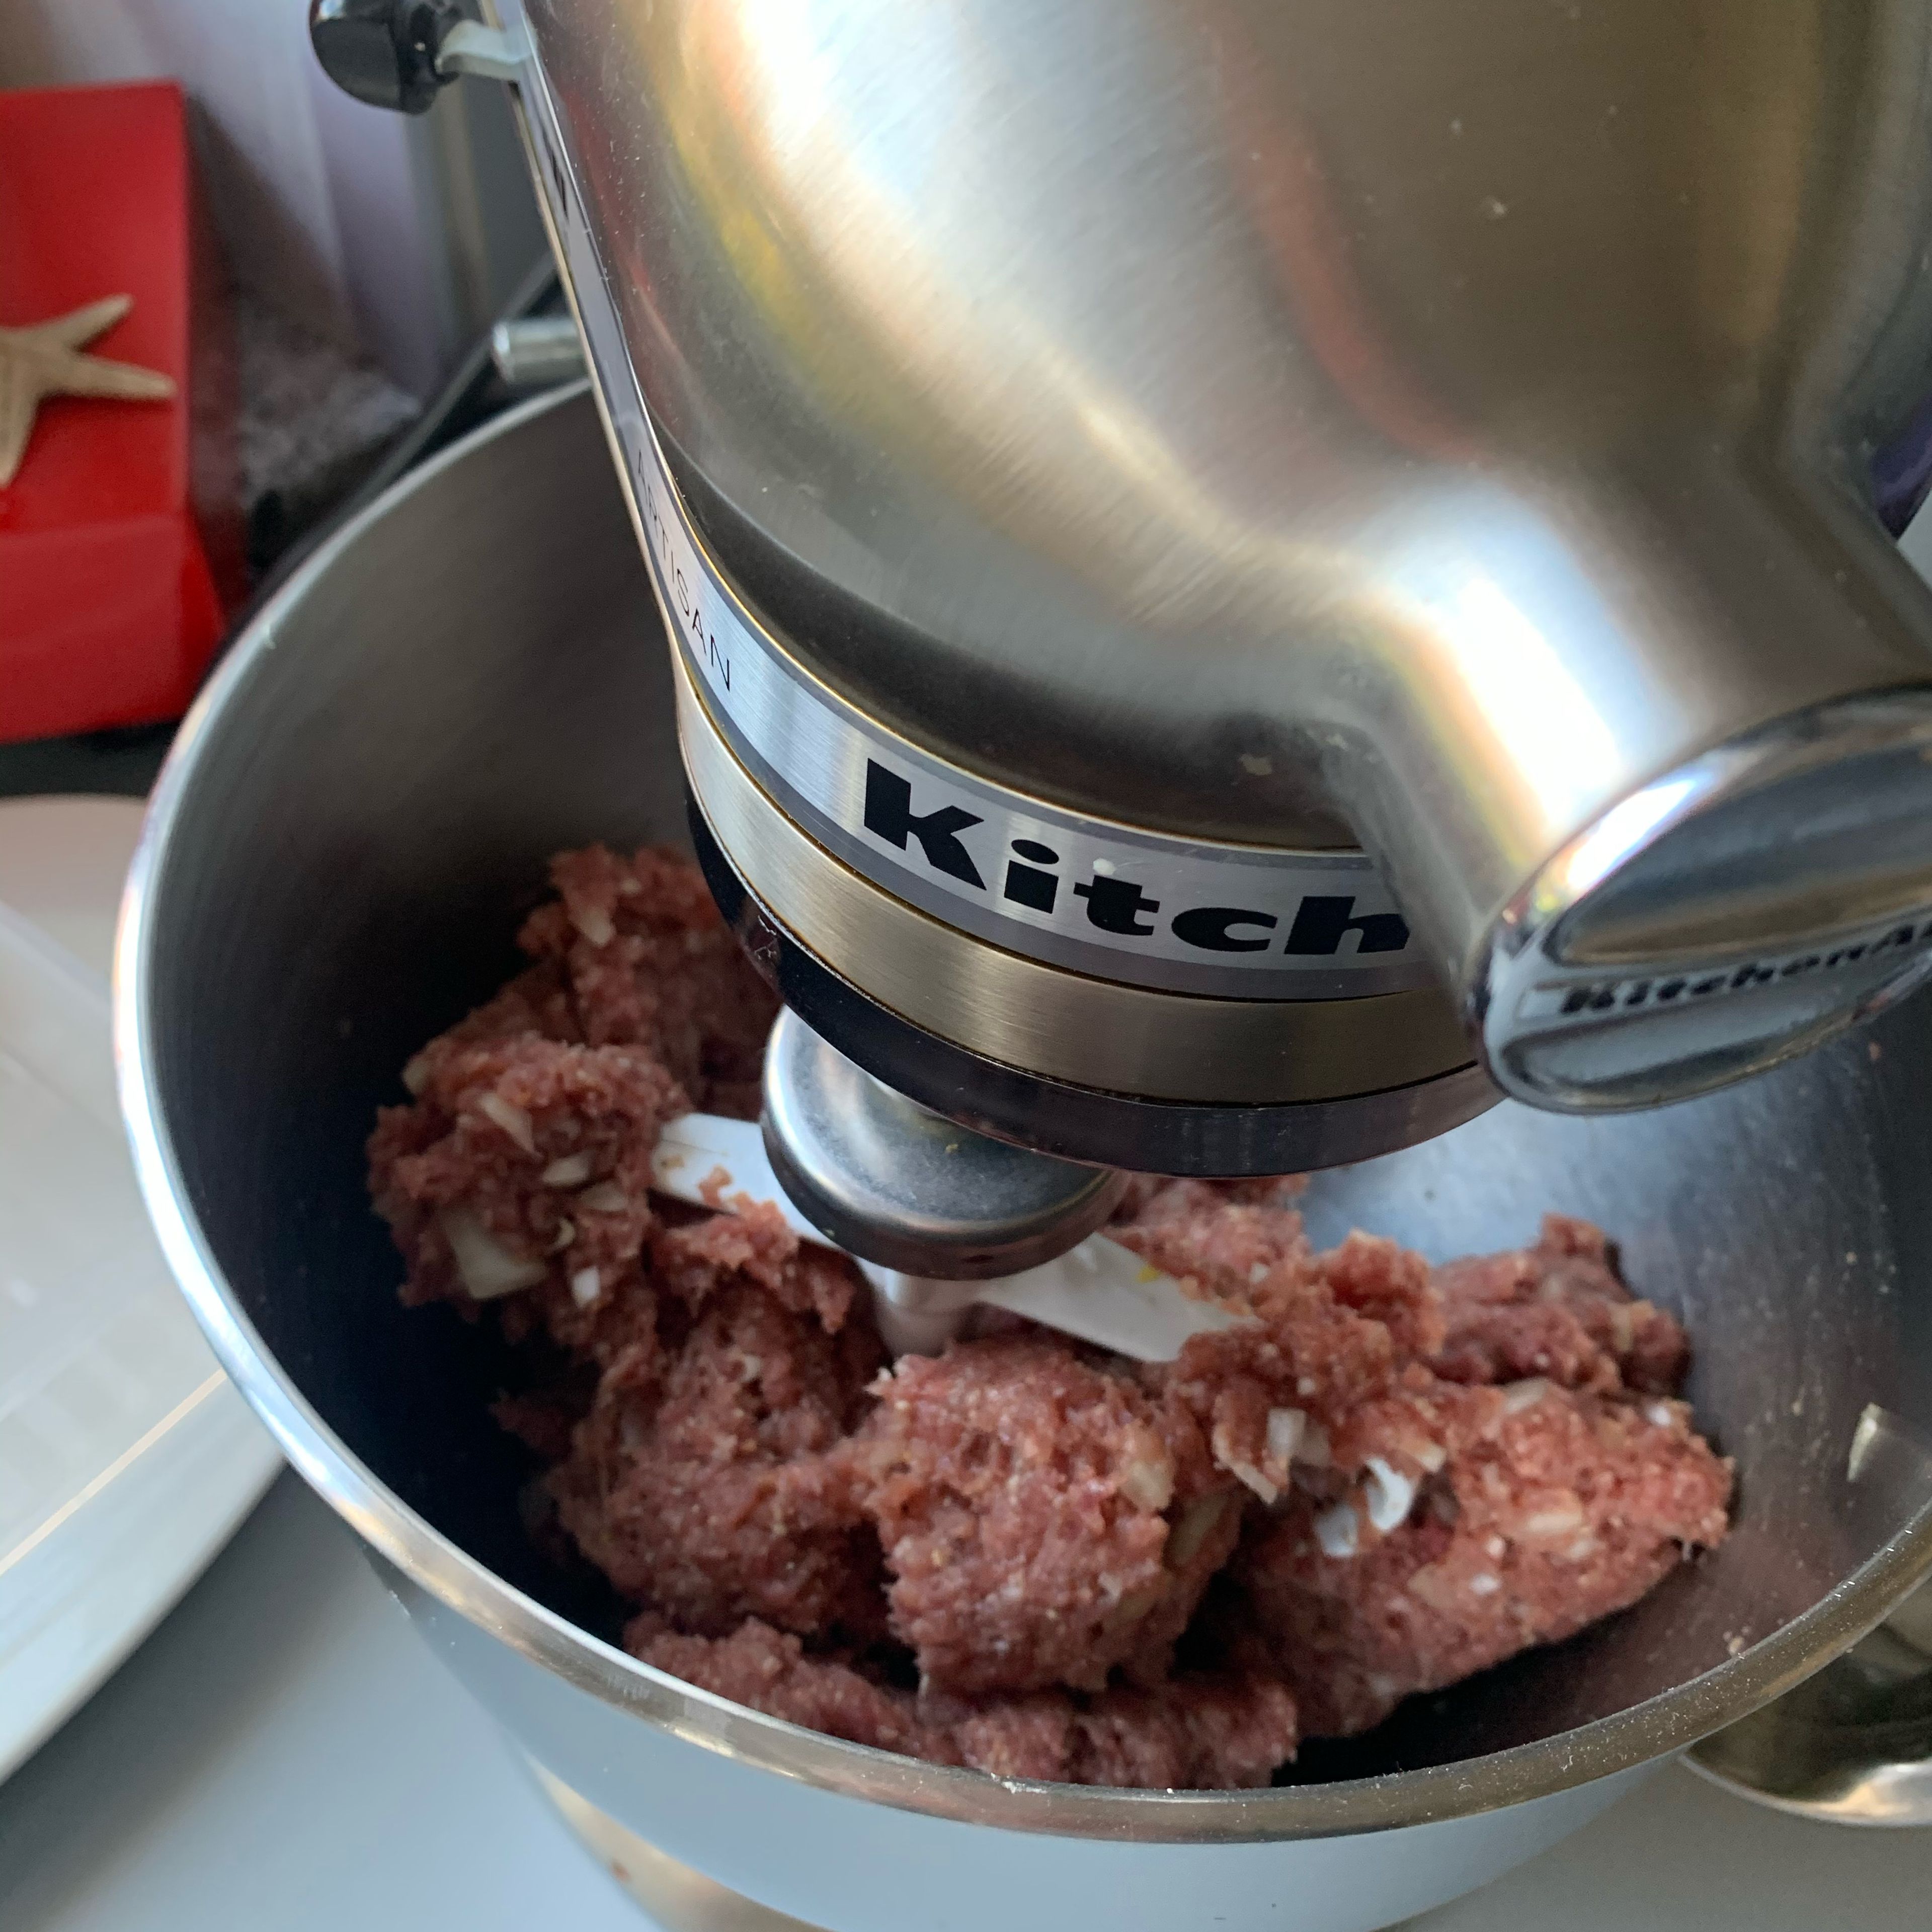 Erstellen Sie mit dem Hackfleisch (Halb Schwein / Halb Rind) vom Metzger eine Masse für die Klöße￼. (Bequeme wie ich nehmen hierzu die Küchenmaschine). Verwenden Sie hierfür das Hackfleisch, eine große Zwiebel (feingehackt), Salz und Pfeffer, ich nehme auch immer einen Esslöffel Fondor, einen Teelöffel Senf, zwei der Eier und ein eingeweichtes Brötchen. Ersatzweise kann man auch Semmelbrösel nehmen.￼